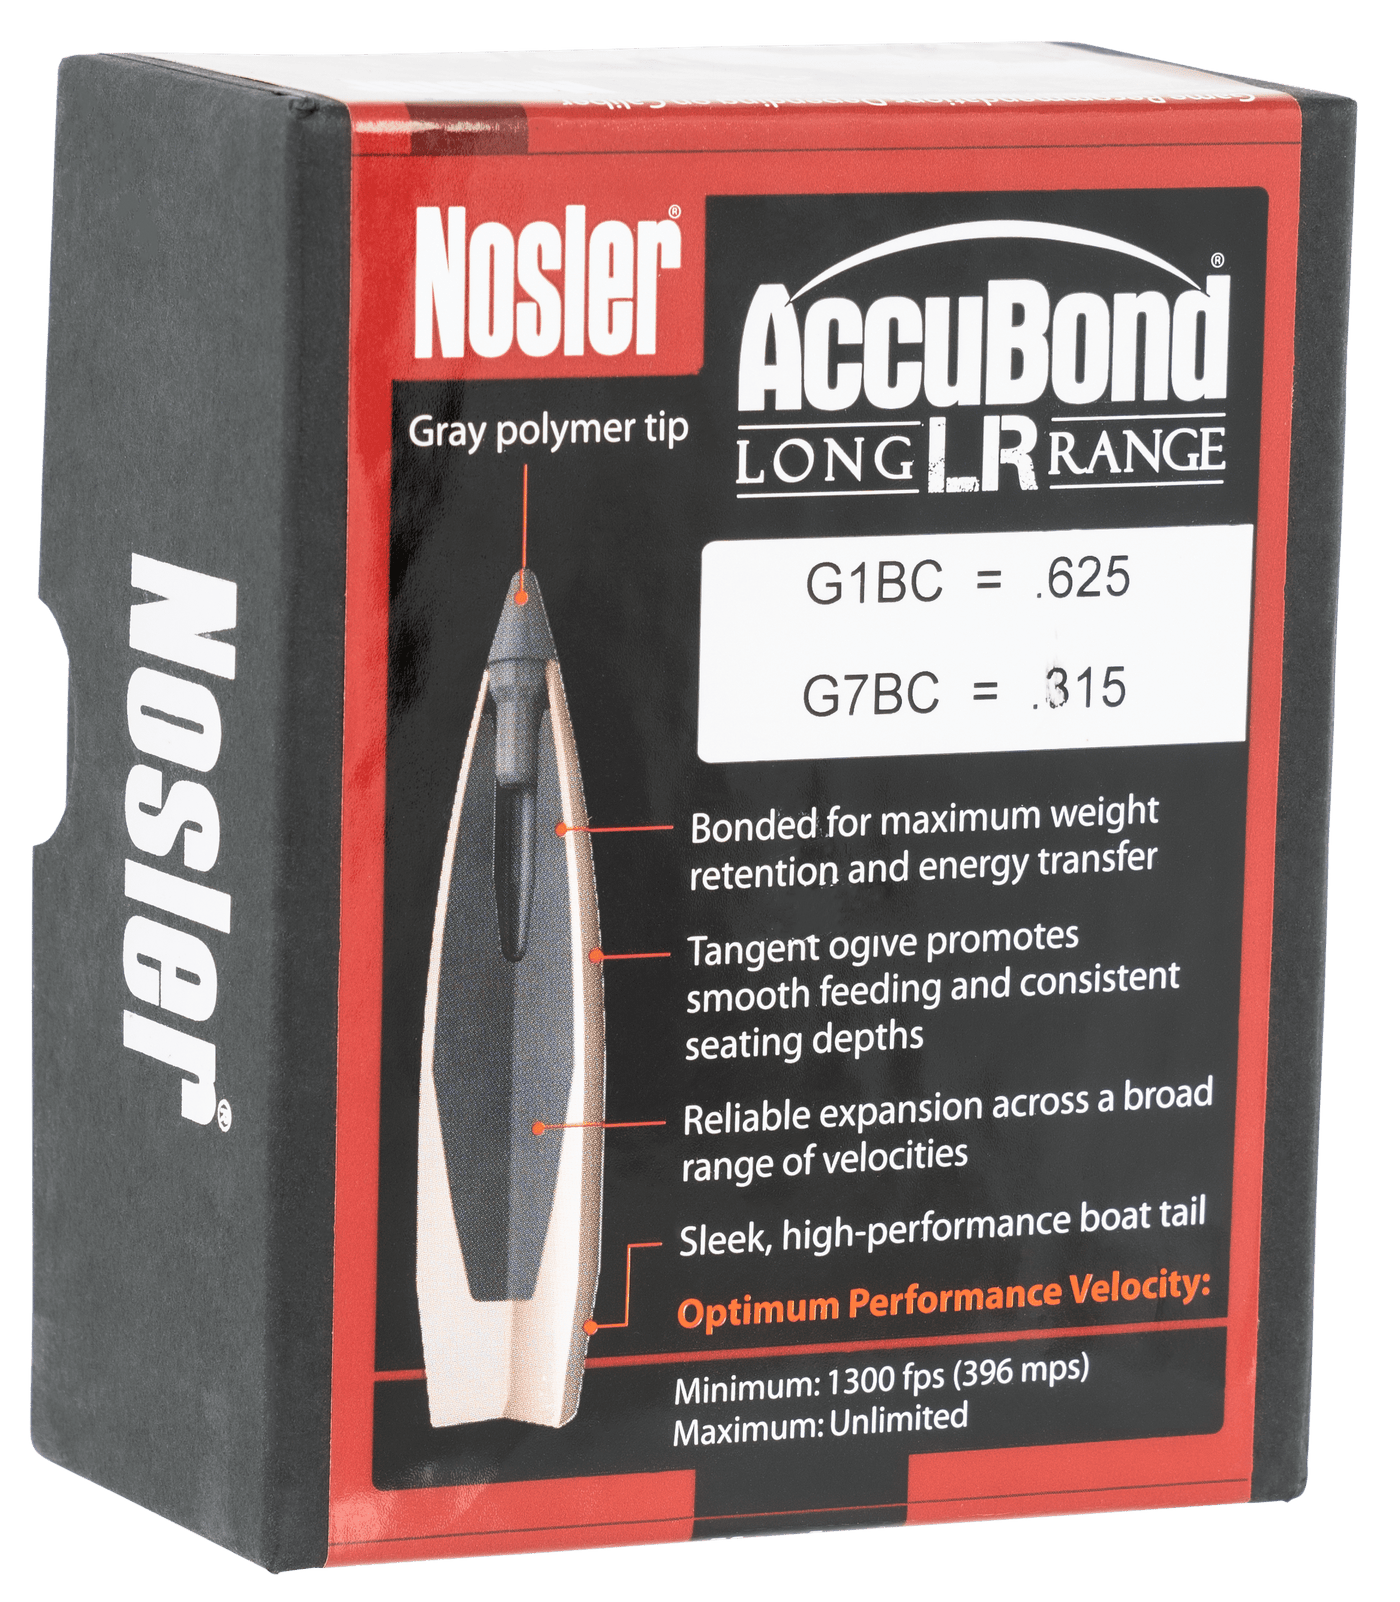 Nosler Nosler Accubond Long Range Bullets 6.5mm 142 Gr. Spitzer Point 100 Pk. Reloading